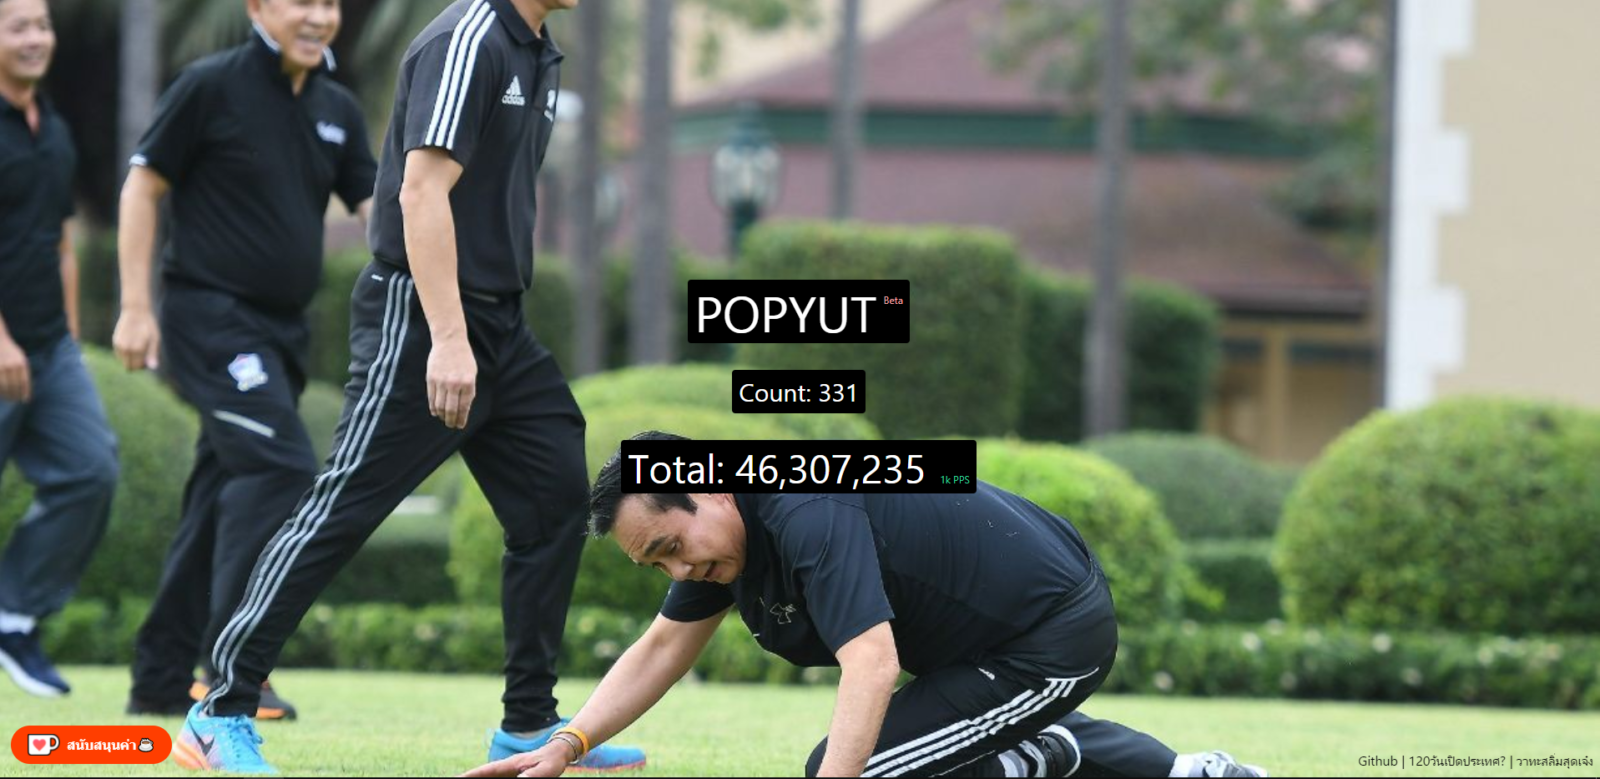 ฆฏฆฏฆฏฆ | POPYUT | มาแทน POPCAT กับเกมกดท่านผู้นำใน POPYUT! ของใหม่คนไทยทำ!